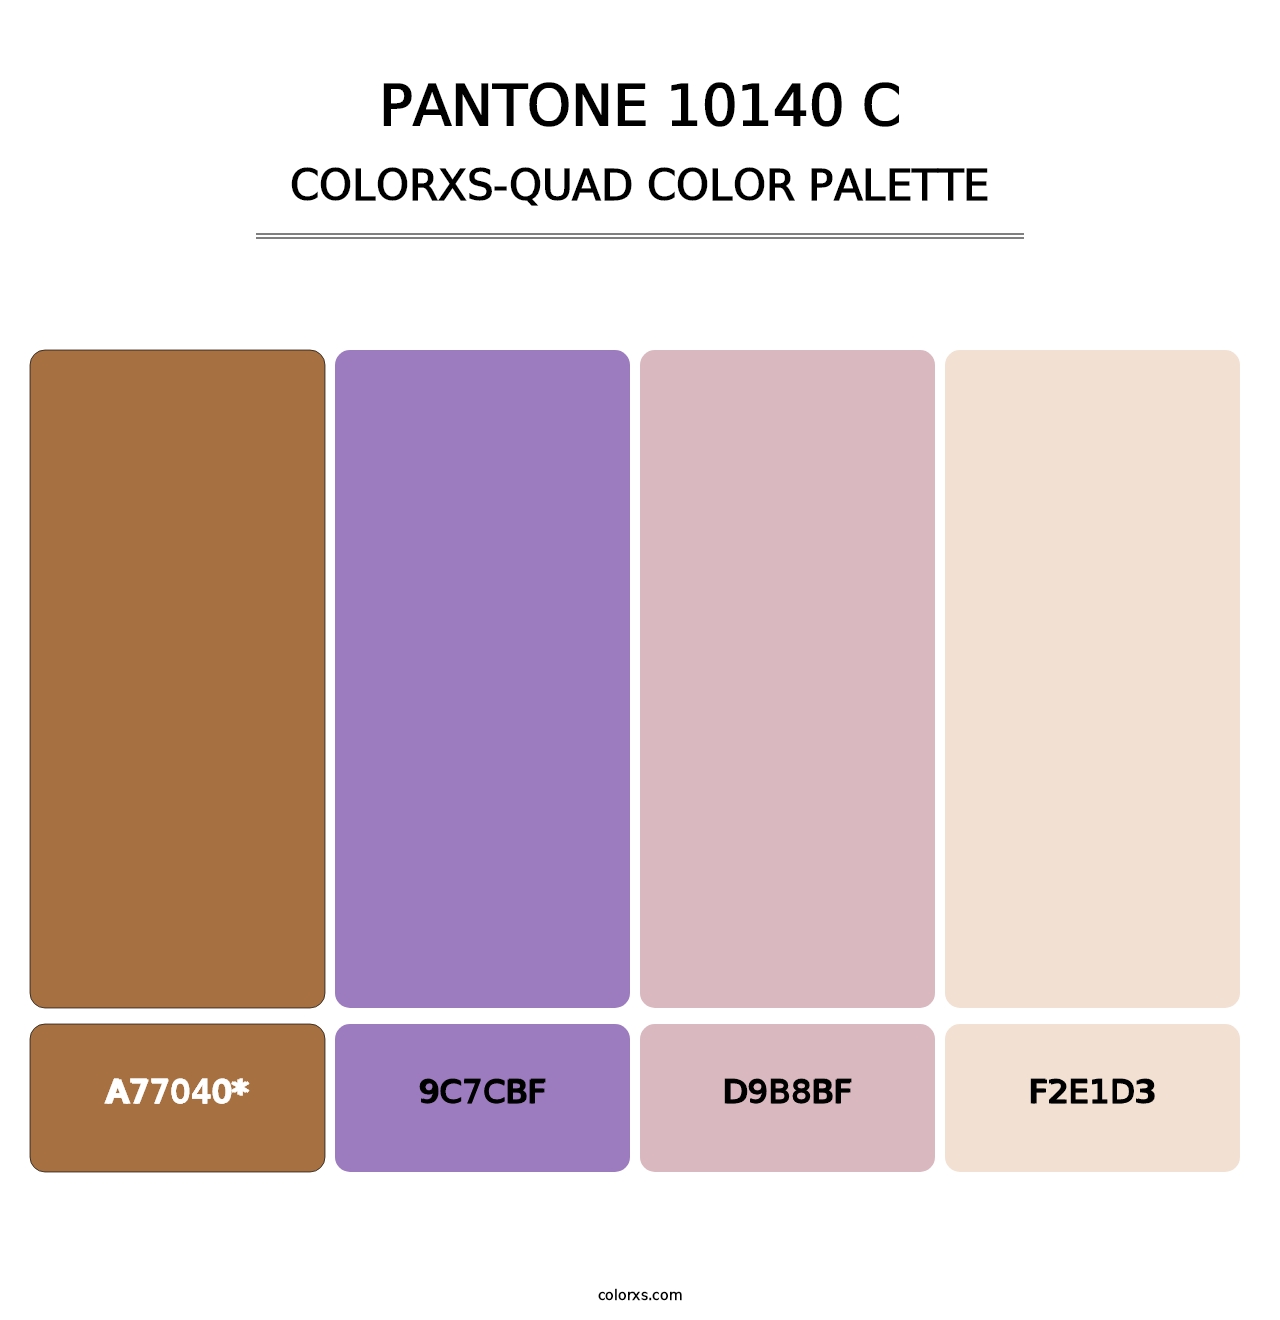 PANTONE 10140 C - Colorxs Quad Palette